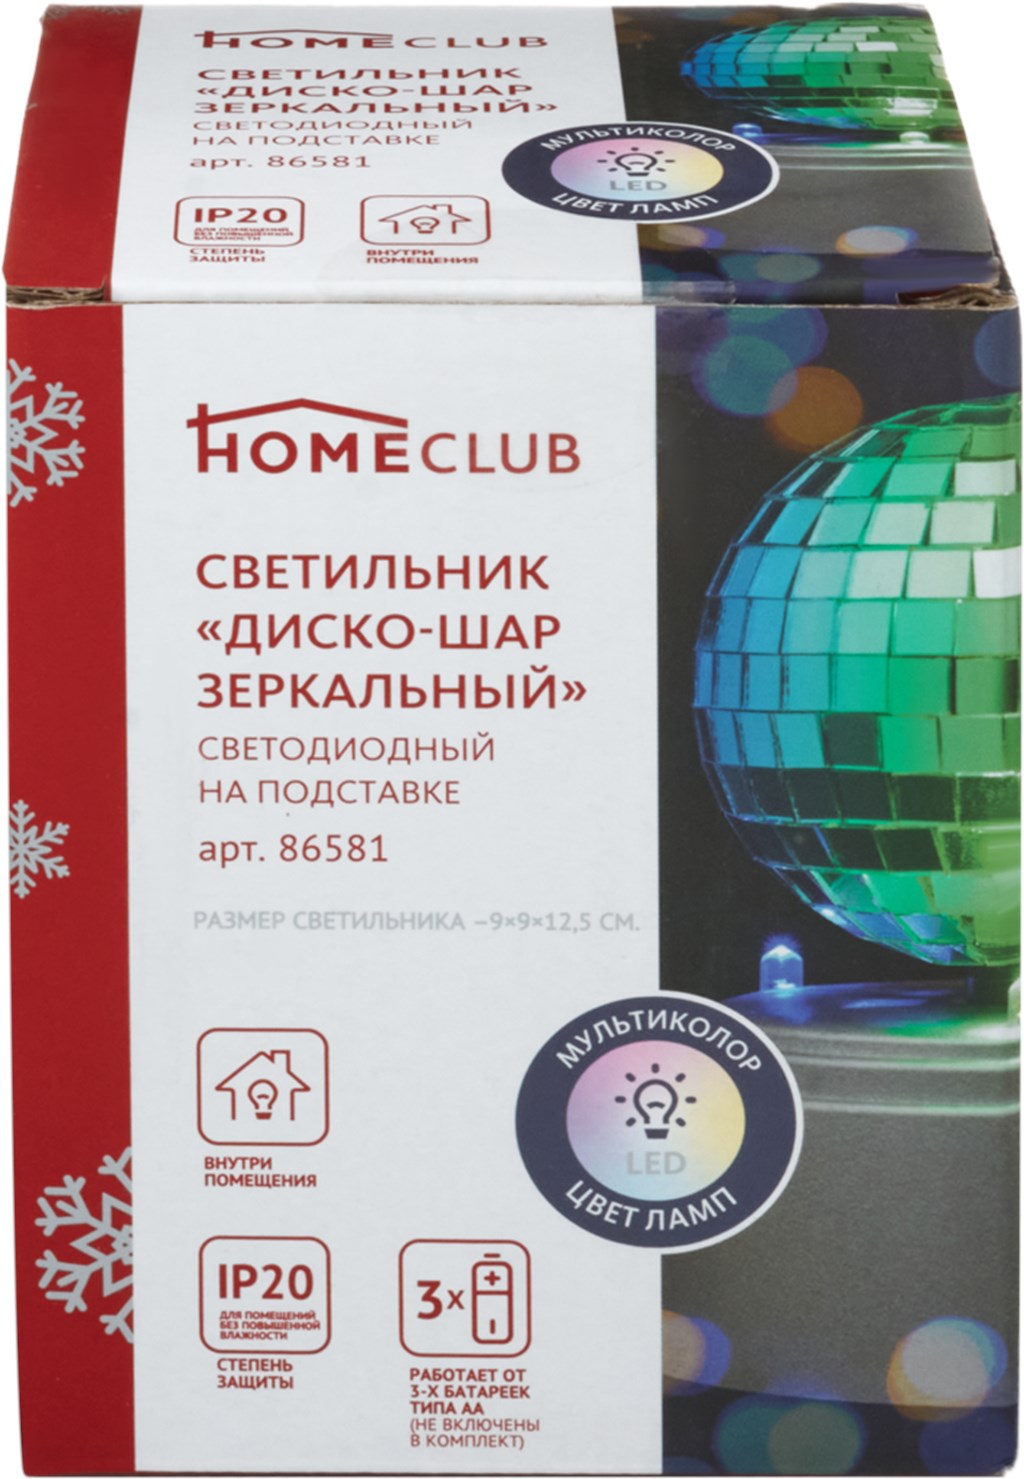 Светильник HomeClub Диско шар зеркальный на подставке